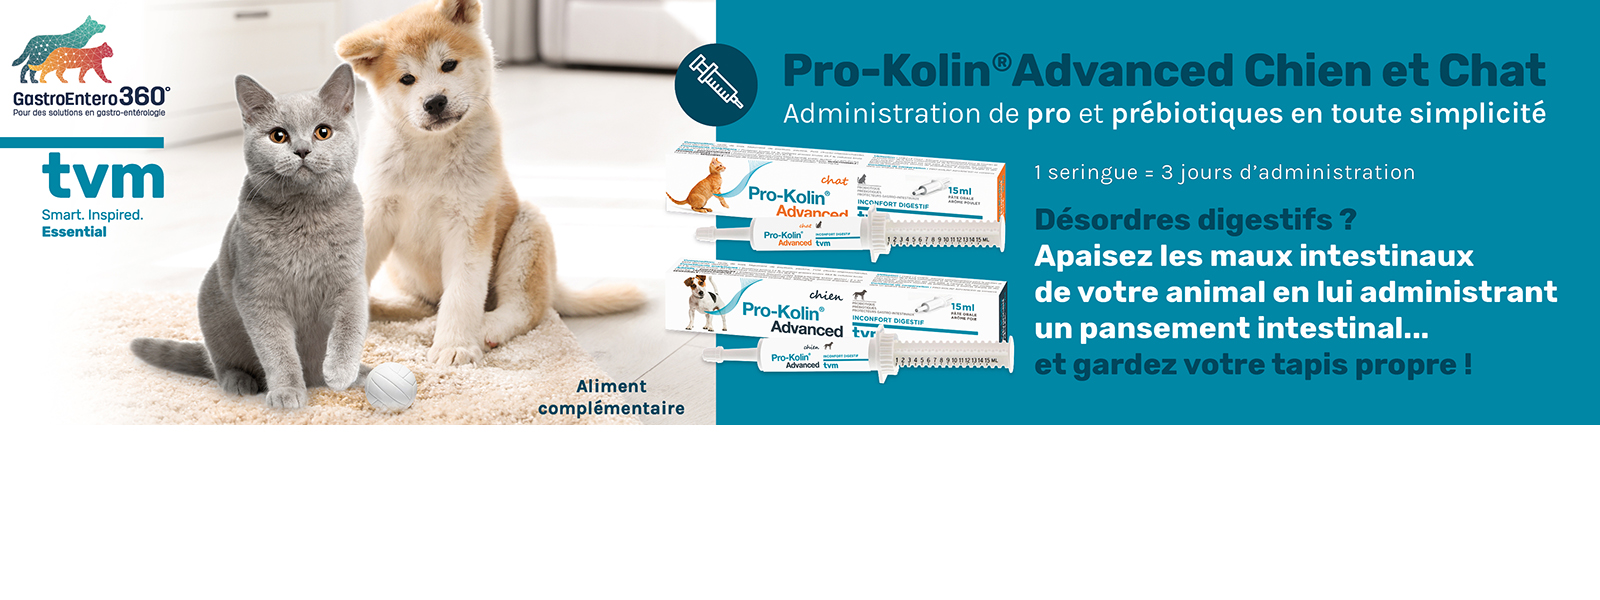 Pro-Kolin Advanced chien et chat